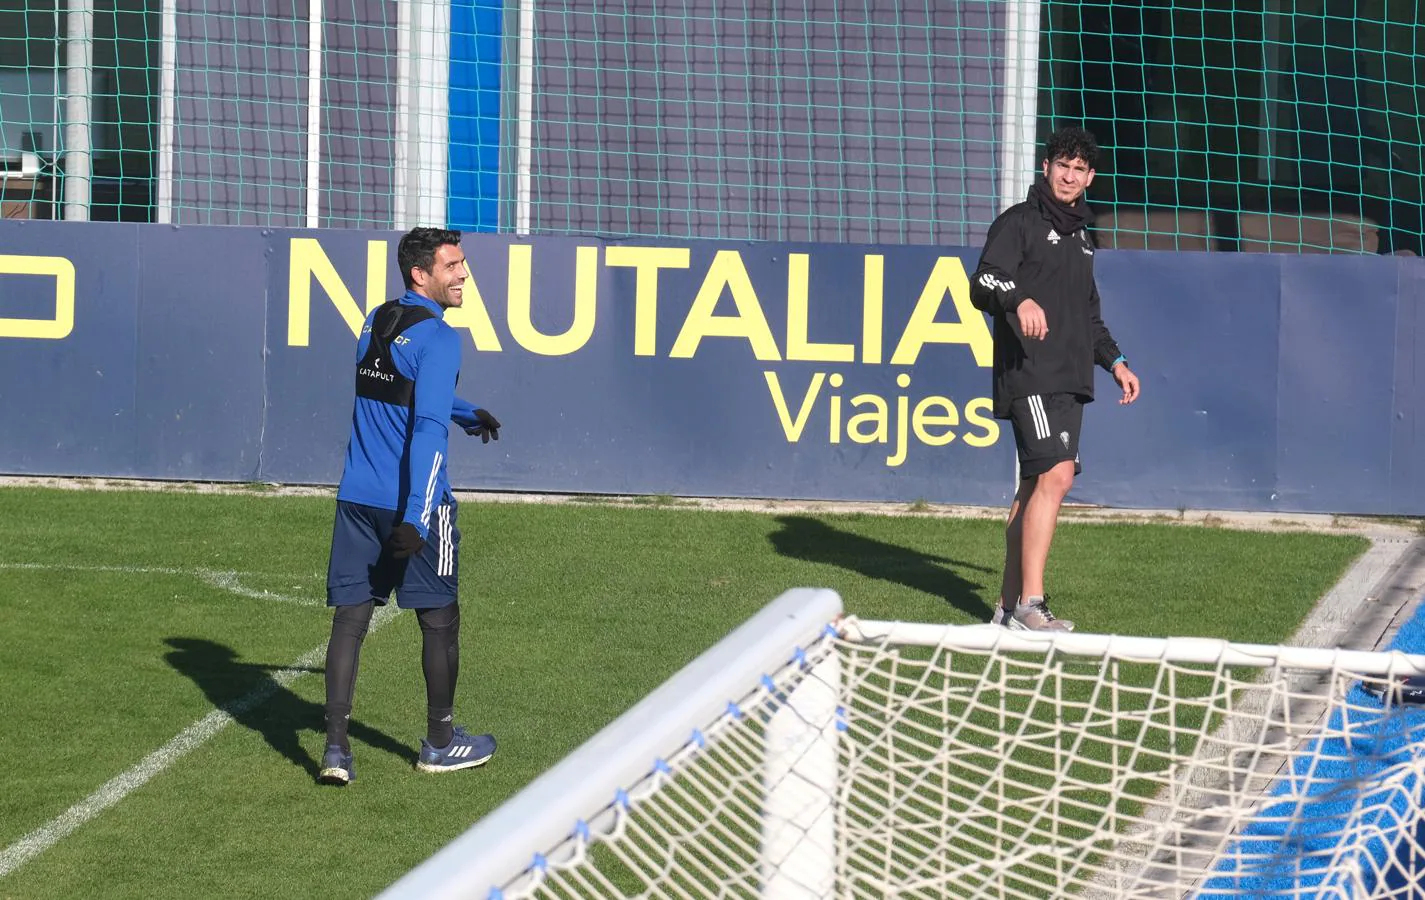 FOTOS: El entrenamiento del Cádiz CF, en imágenes